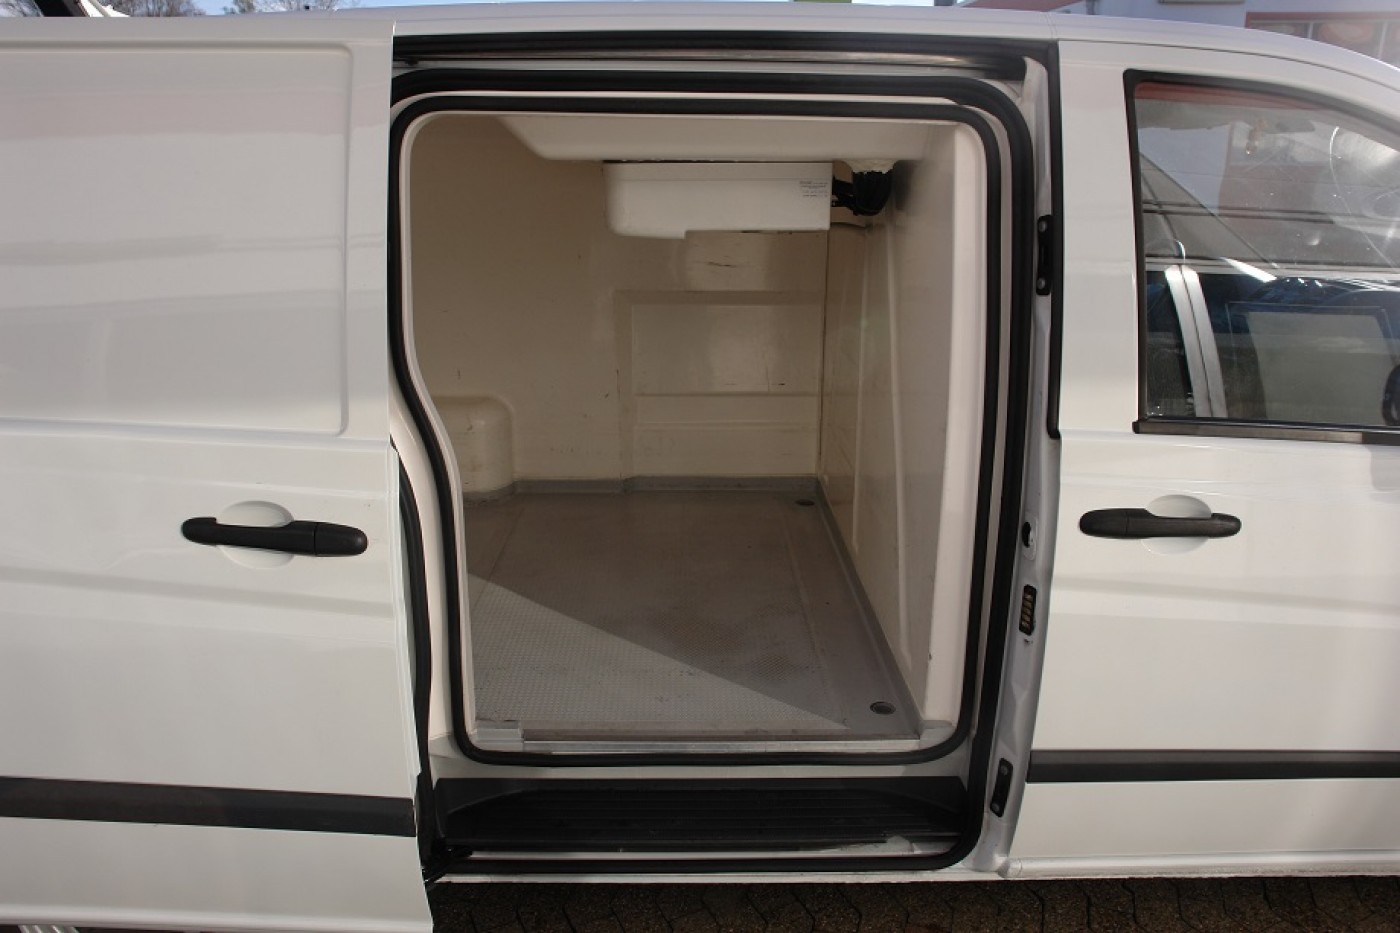 Mercedes-Benz Vito 110CDI Морозильная камера Thermo King V100 -32 ° C стационарный / ночная работа, боковая дверь EURO5 TÜV!